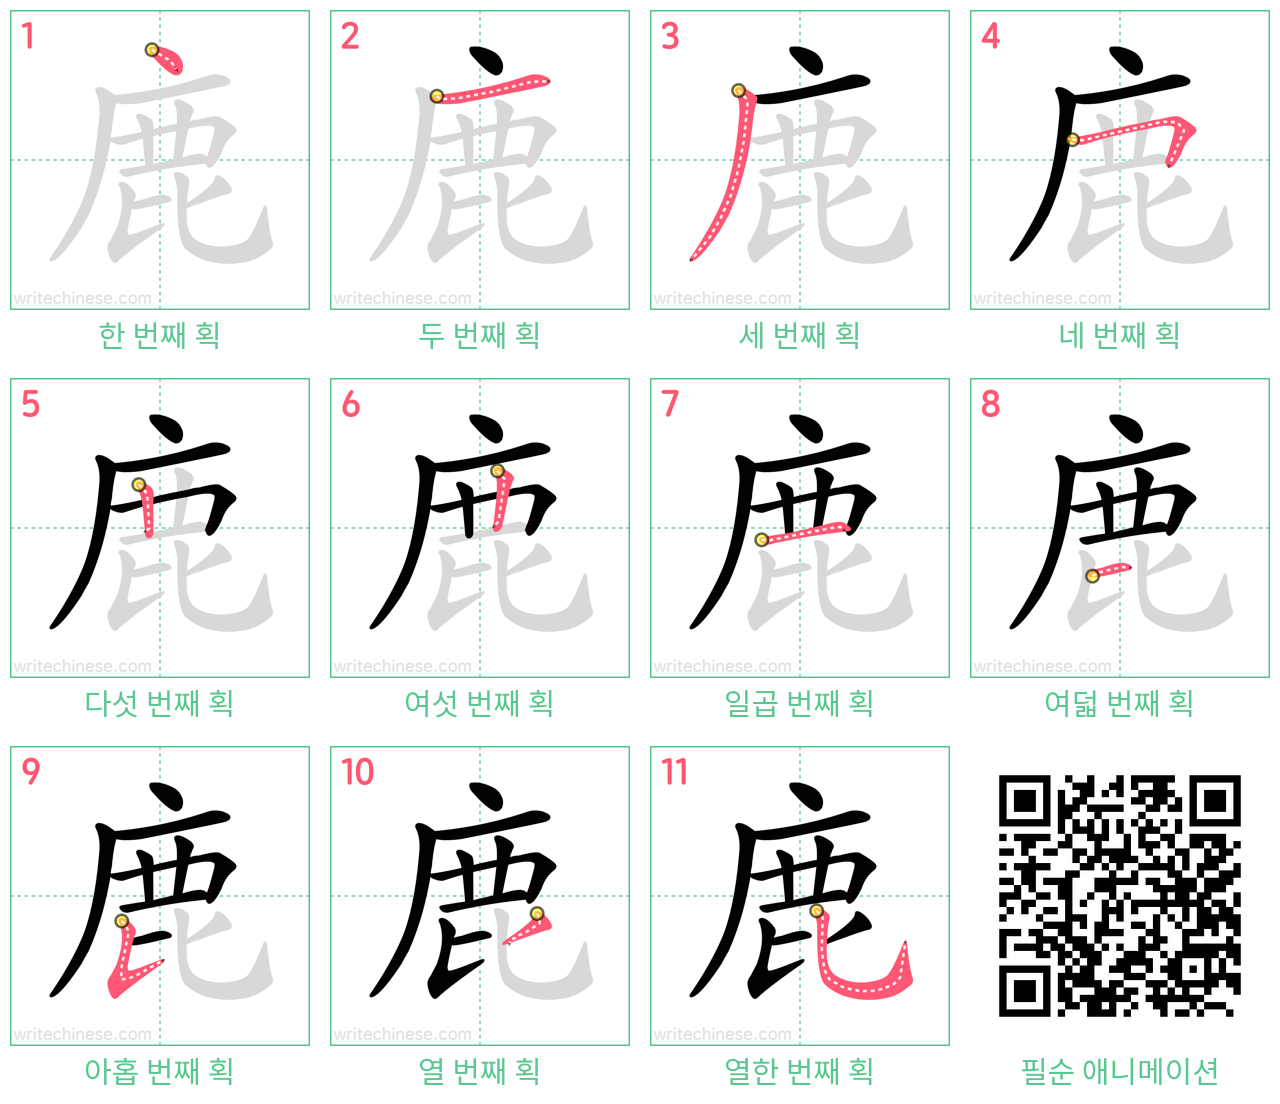 鹿 step-by-step stroke order diagrams